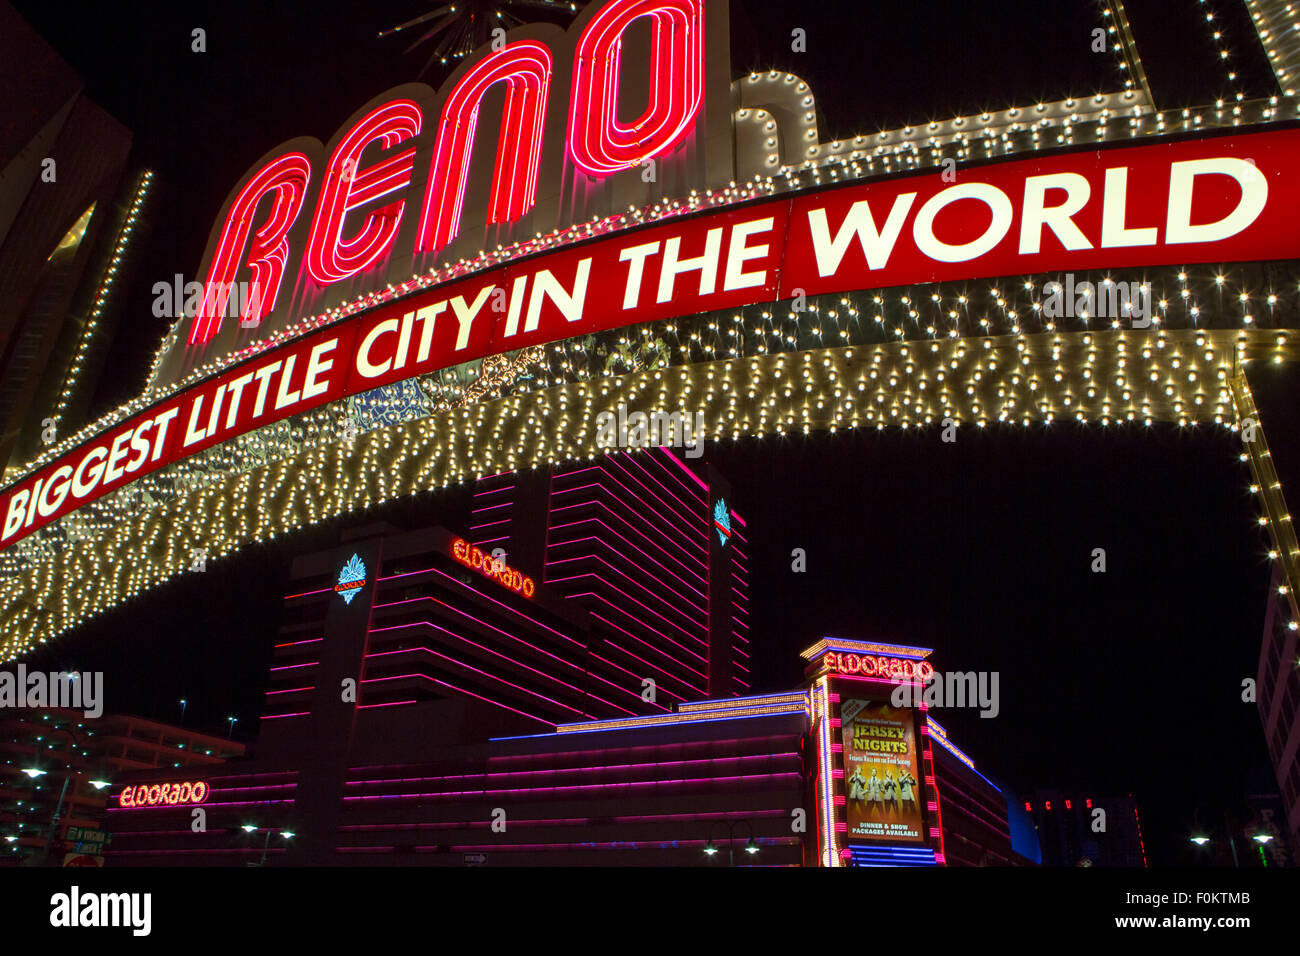 Détail de néon lumineux ville de Reno dans la nuit. La plus grande petite ville dans le monde situé dans l'état du Nevada. Banque D'Images